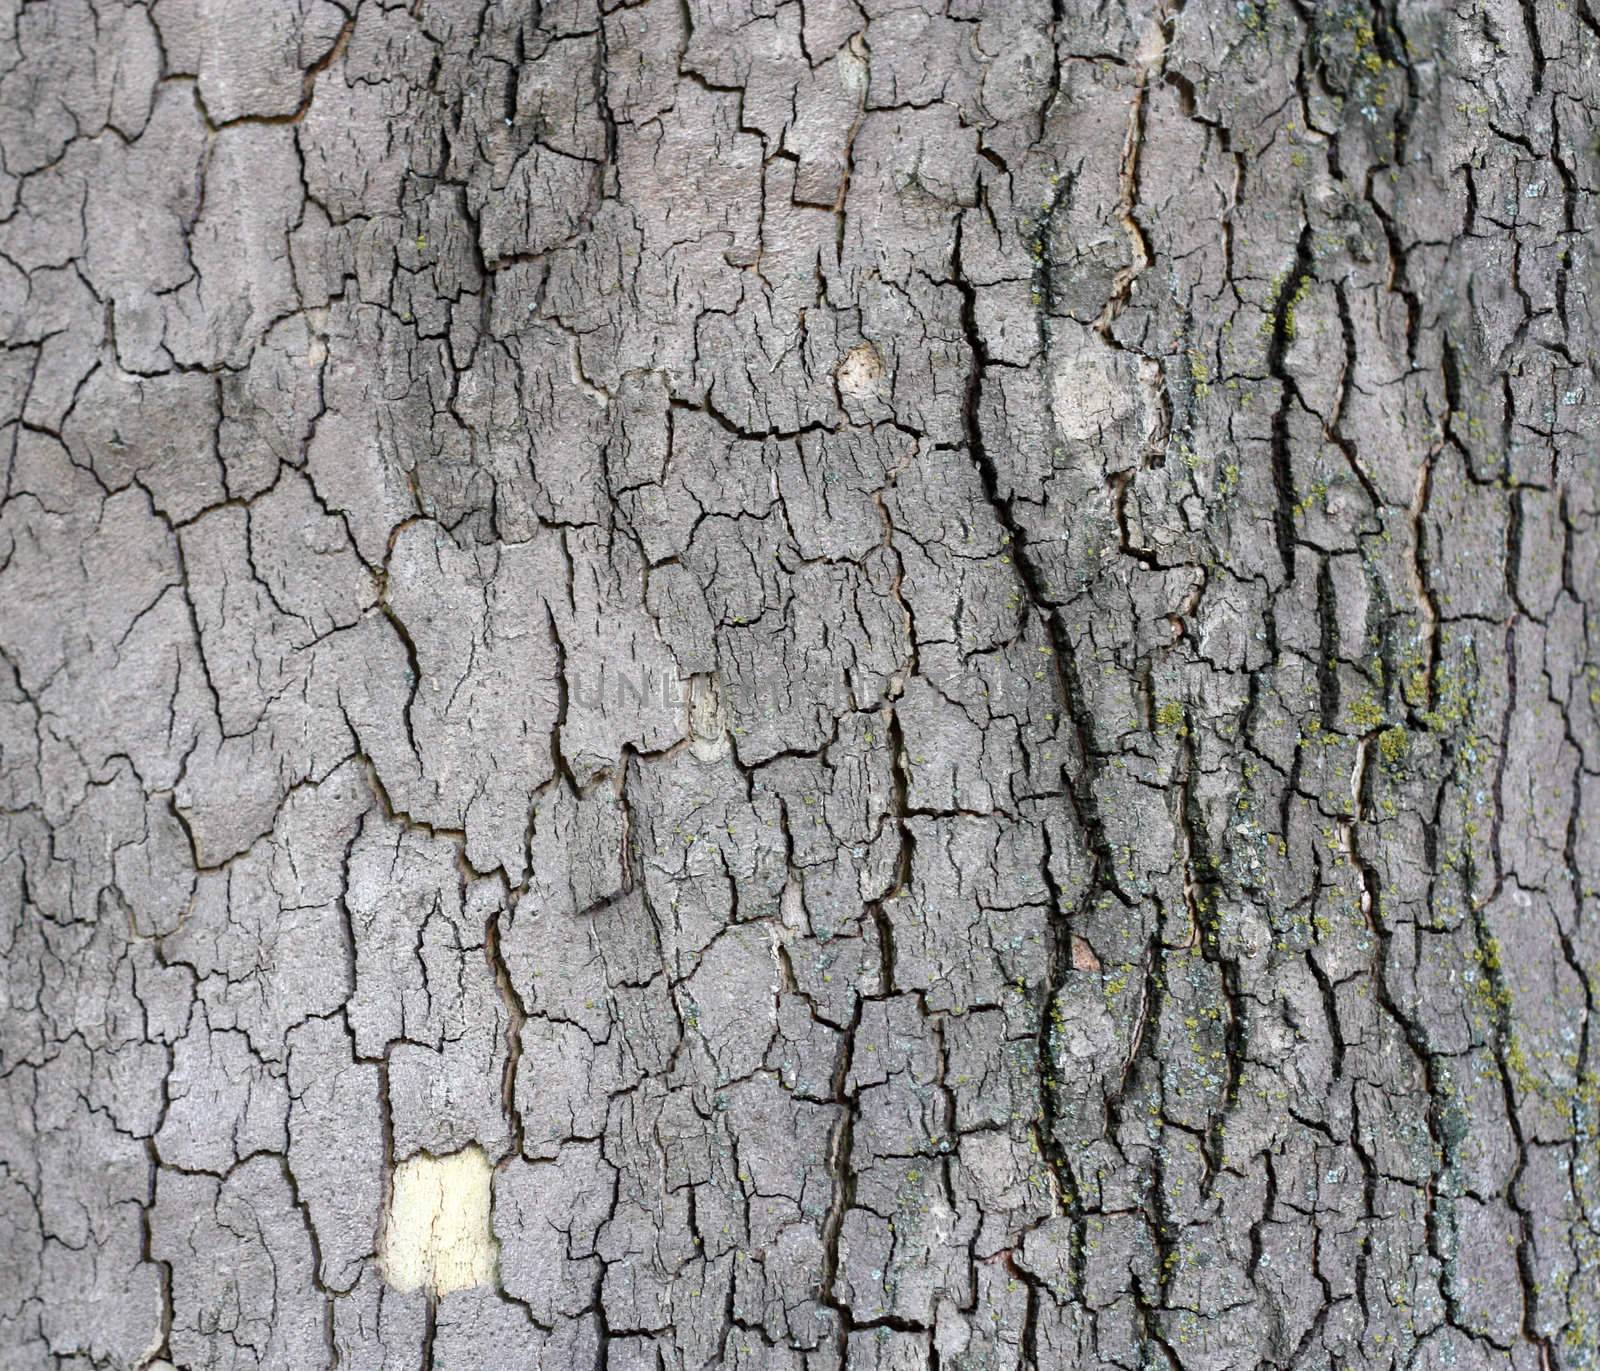 Cortex of the alder with lichen - texture  by schankz